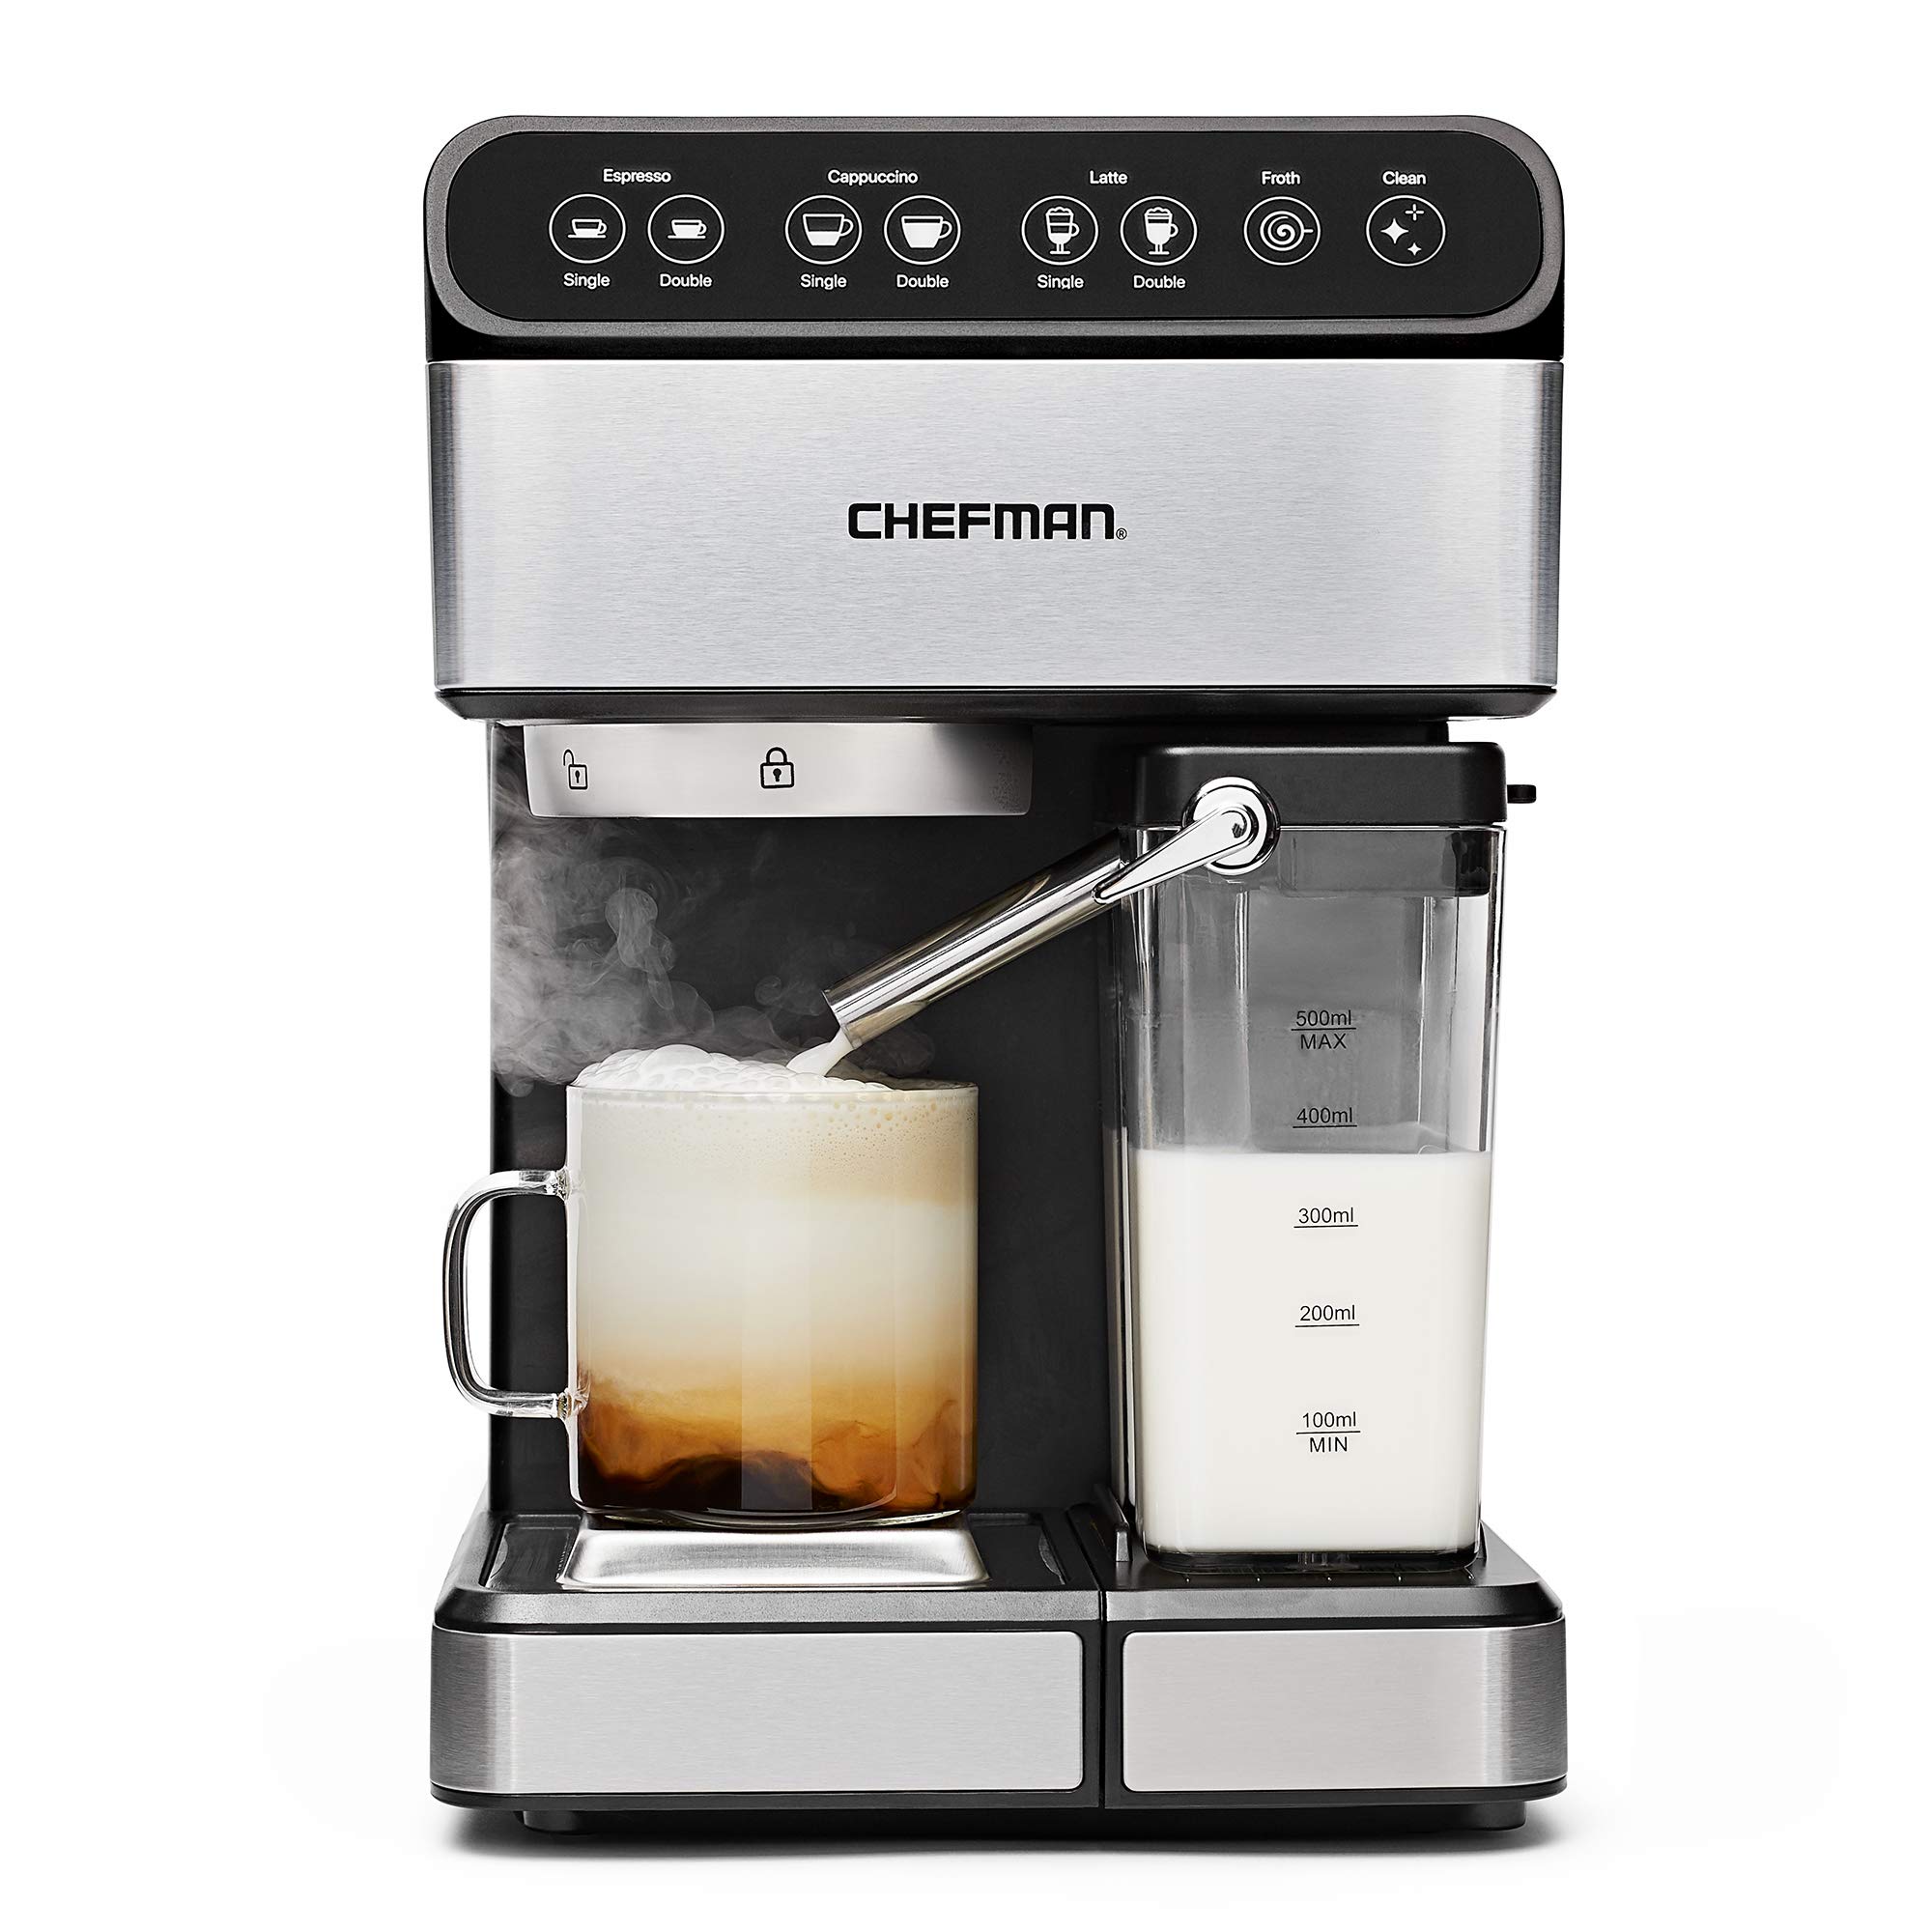 Chefman 6-in-1 Espresso Machine,Powerful 15-Bar Pump